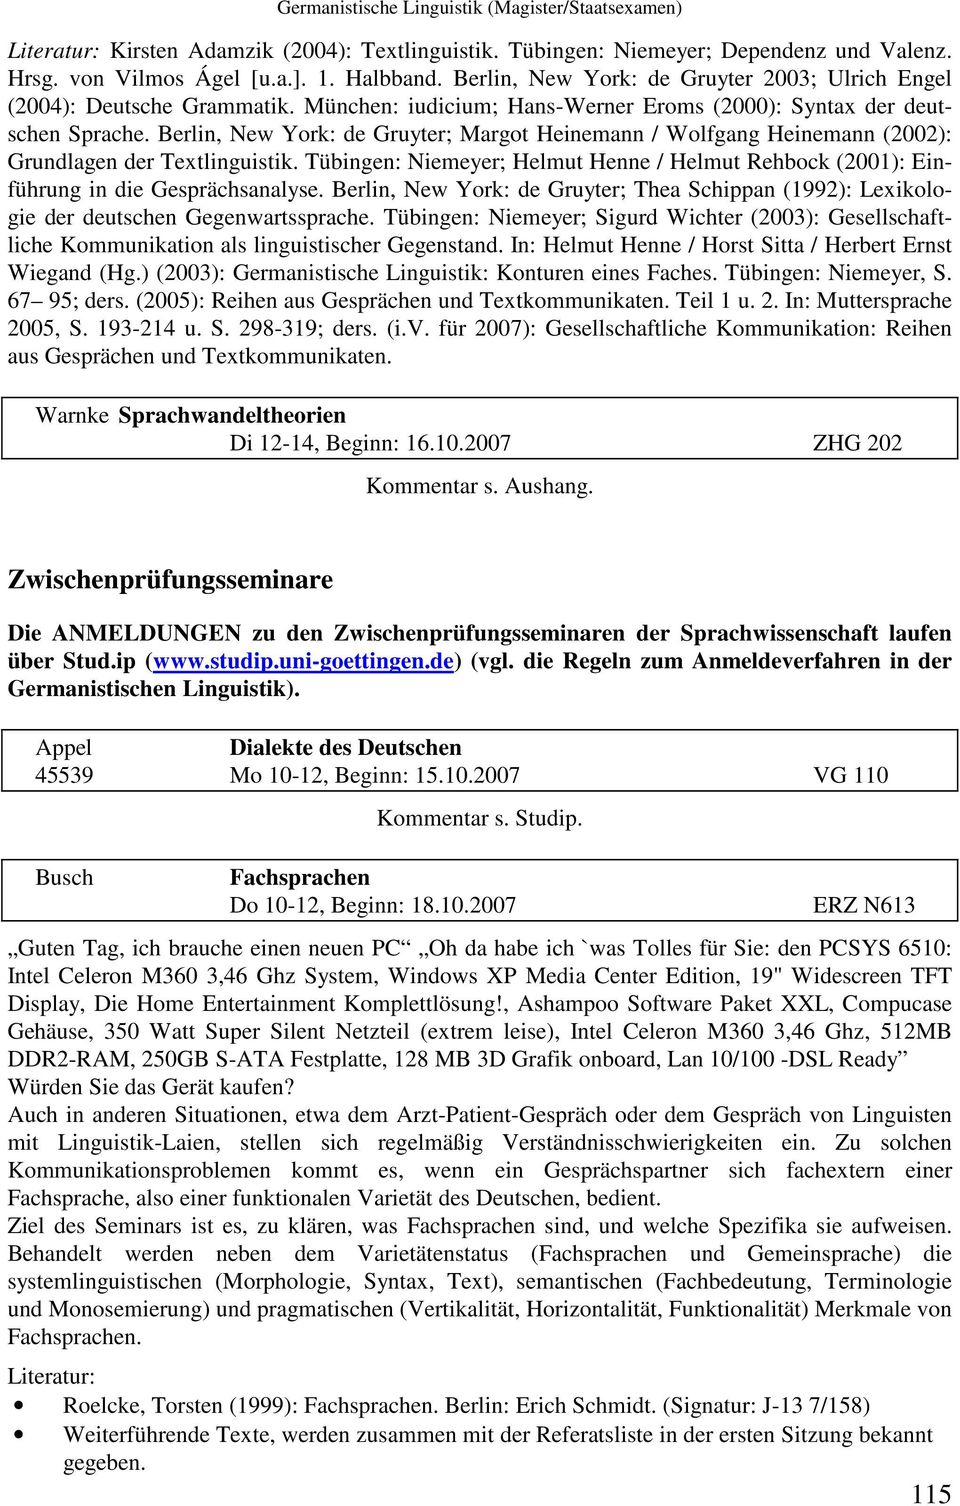 Berlin, New York: de Gruyter; Margot Heinemann / Wolfgang Heinemann (2002): Grundlagen der Textlinguistik. Tübingen: Niemeyer; Helmut Henne / Helmut Rehbock (2001): Einführung in die Gesprächsanalyse.